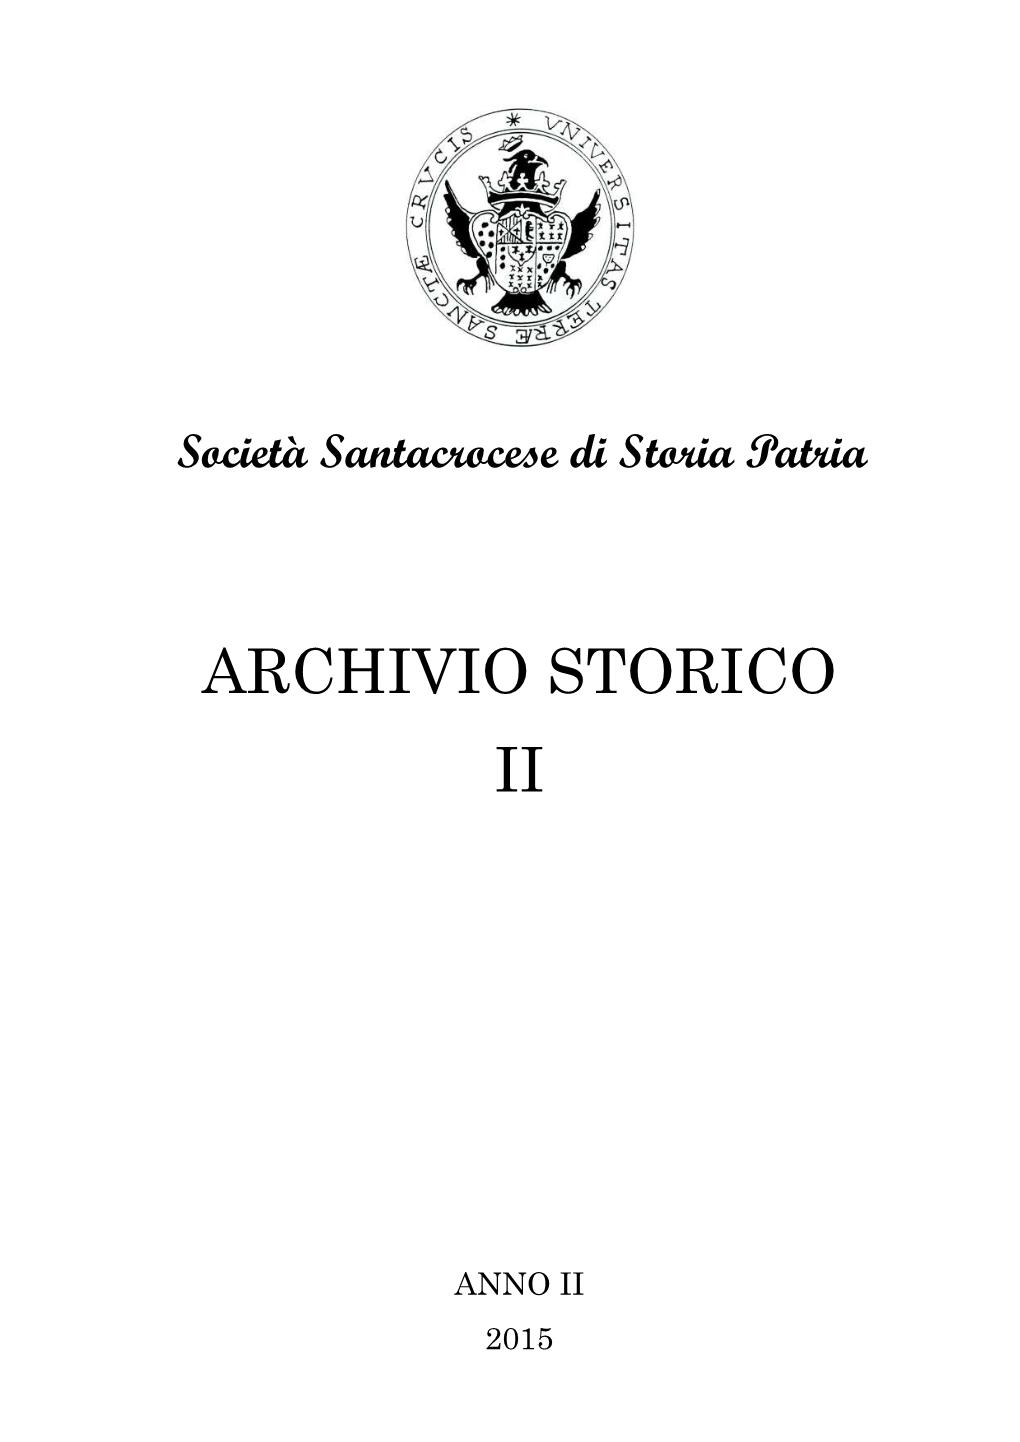 Archivio Storico Ii